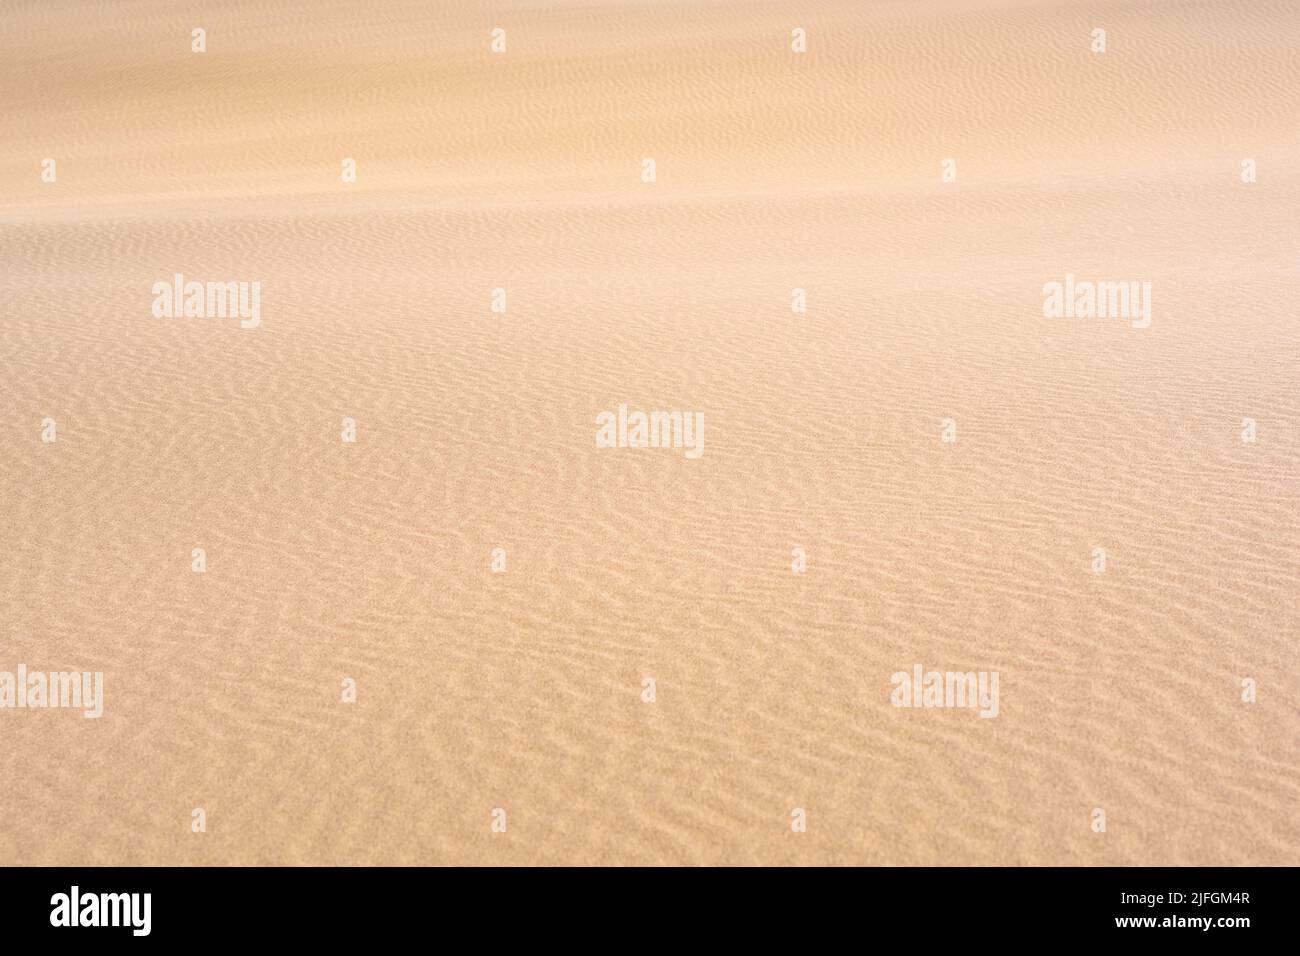 il vento si increspa sulla superficie sabbiosa nel deserto Foto Stock